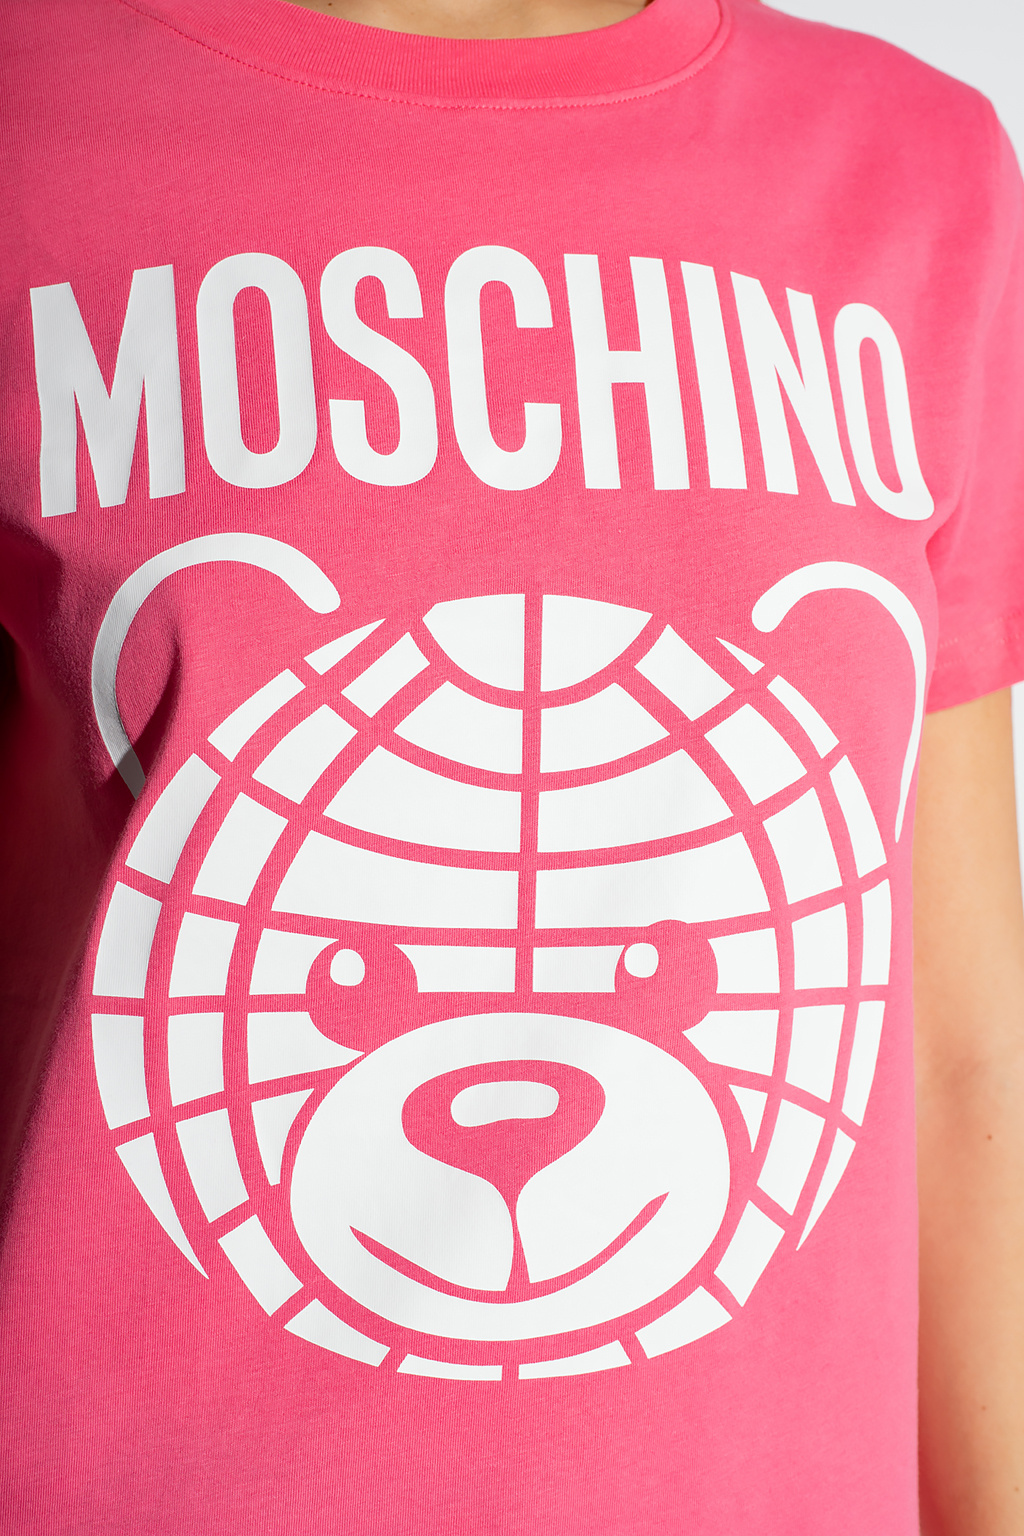 Moschino Cities Paris T-shirt